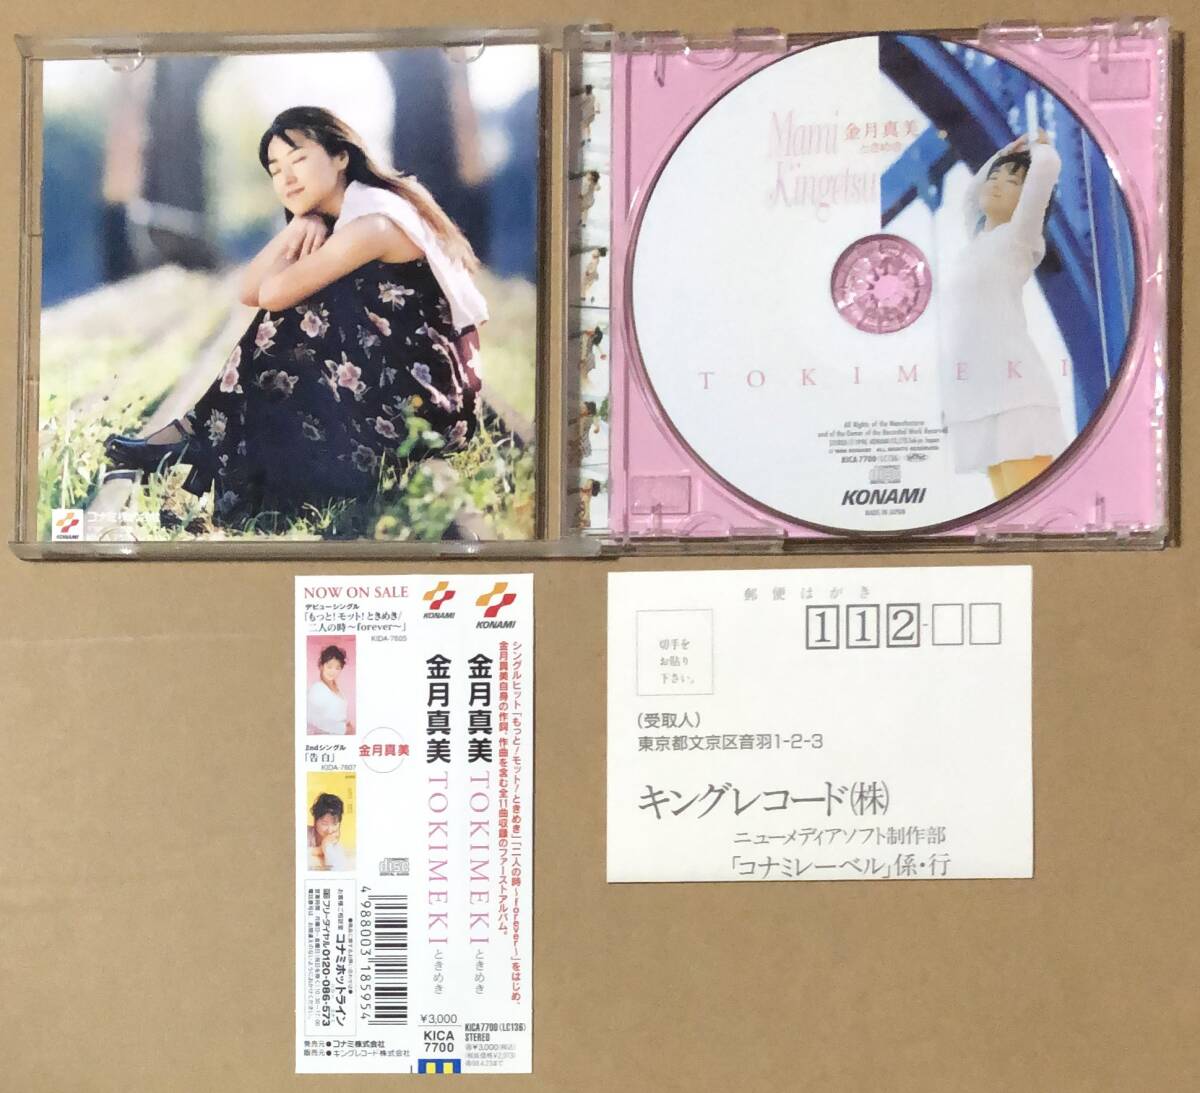 CD* Kingetsu Mami / TOKIMAKI время .. с лентой 